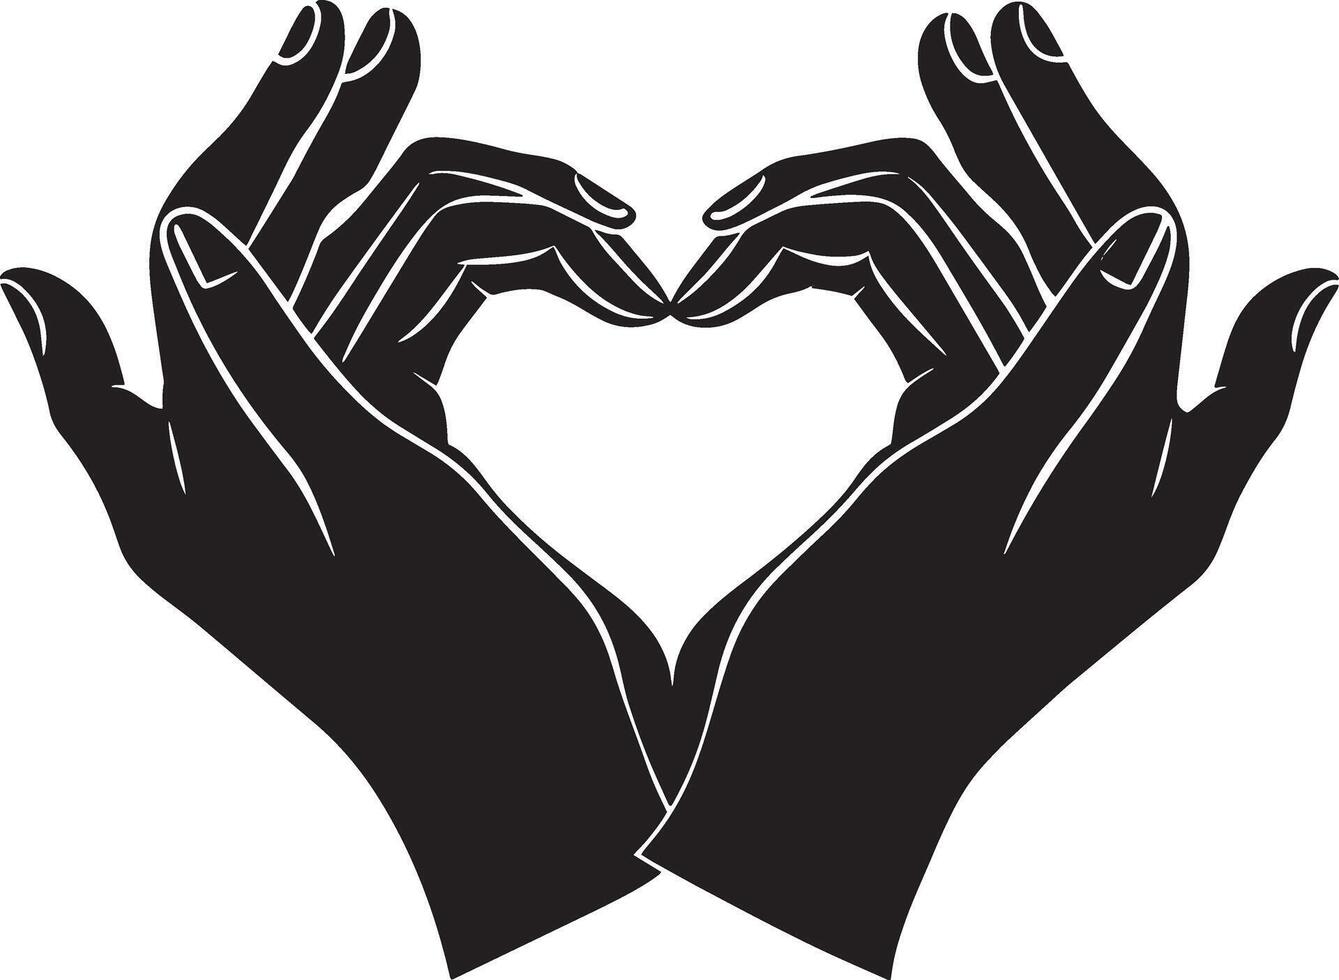 Preto e branco ilustração do mãos formando uma coração forma com seus dedos. vetor